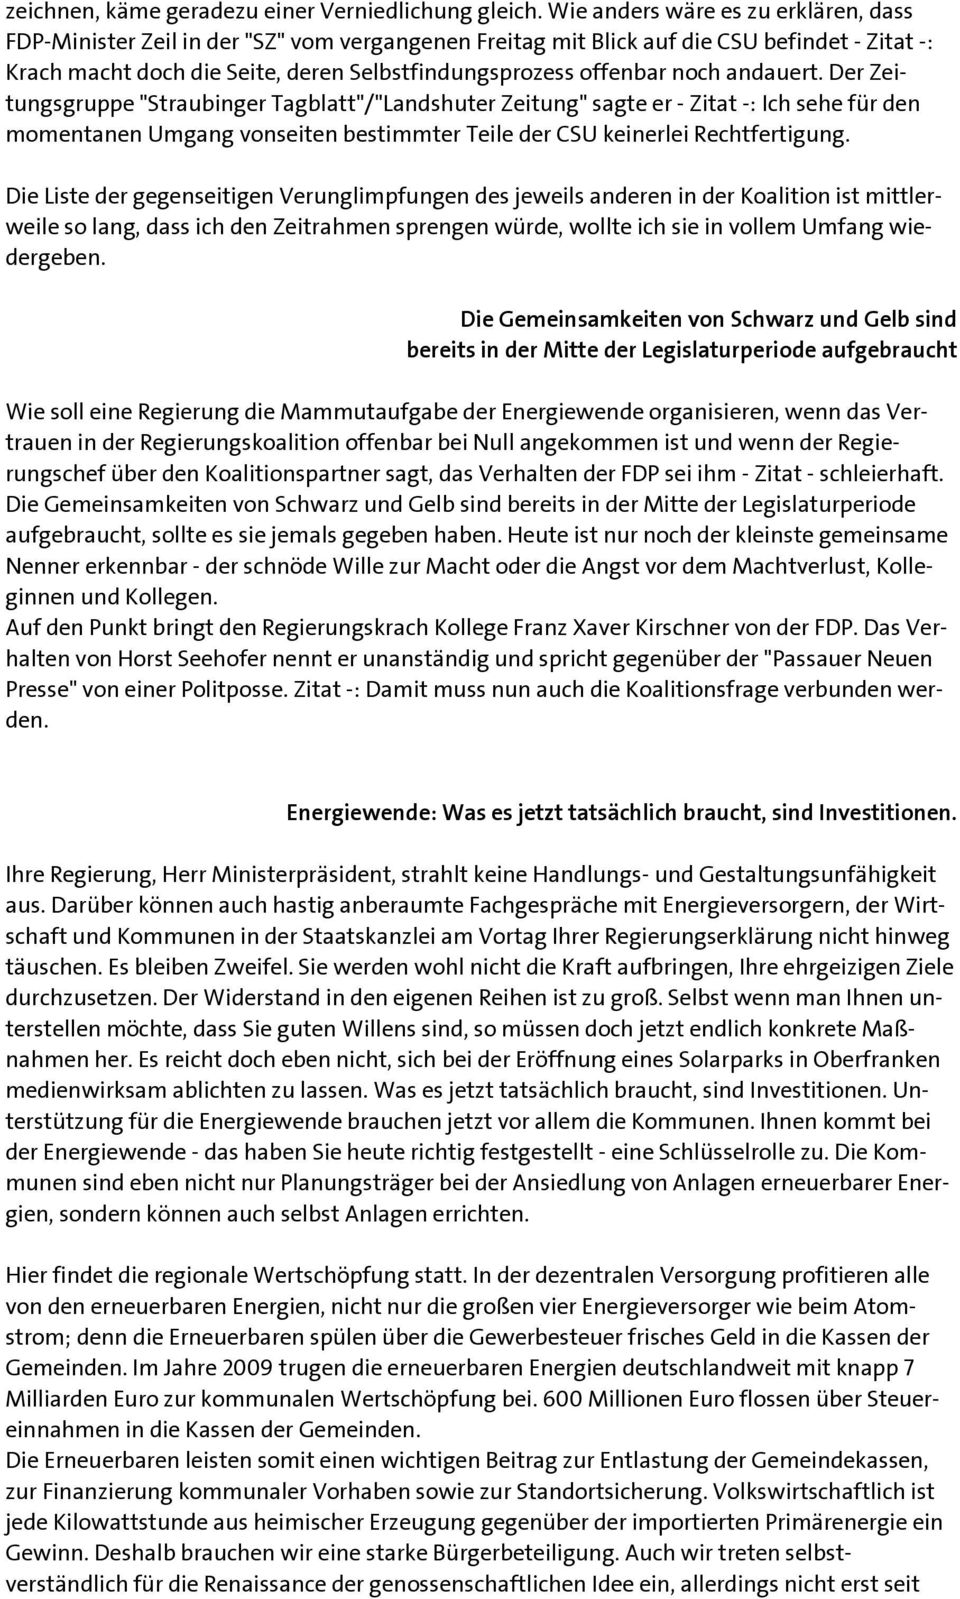 noch andauert. Der Zeitungsgruppe "Straubinger Tagblatt"/"Landshuter Zeitung" sagte er - Zitat -: Ich sehe für den momentanen Umgang vonseiten bestimmter Teile der CSU keinerlei Rechtfertigung.